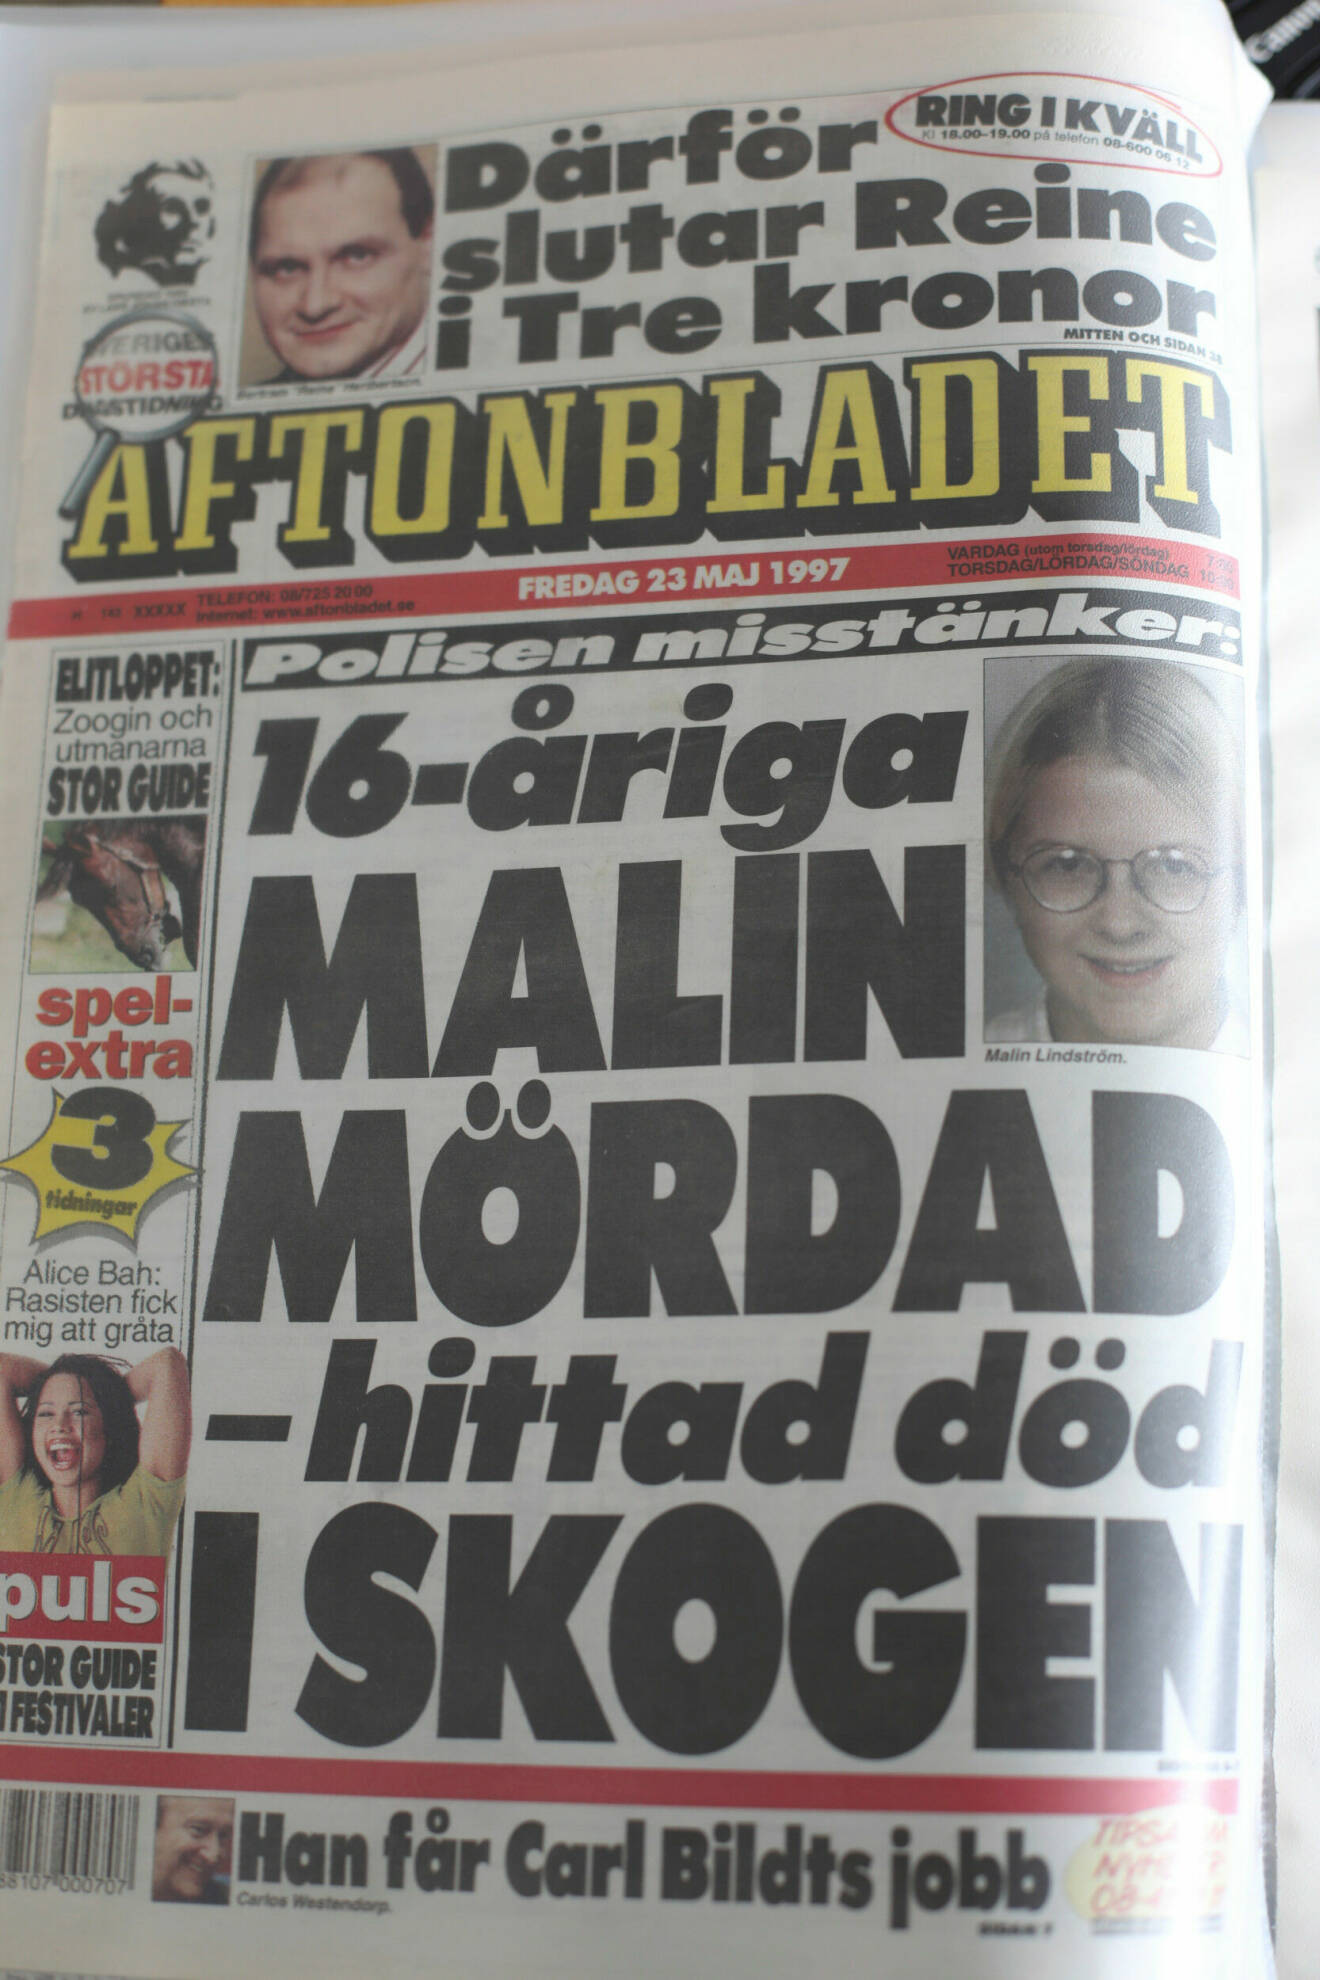 Omslag Aftonbladet om 16 åriga malin mördad.